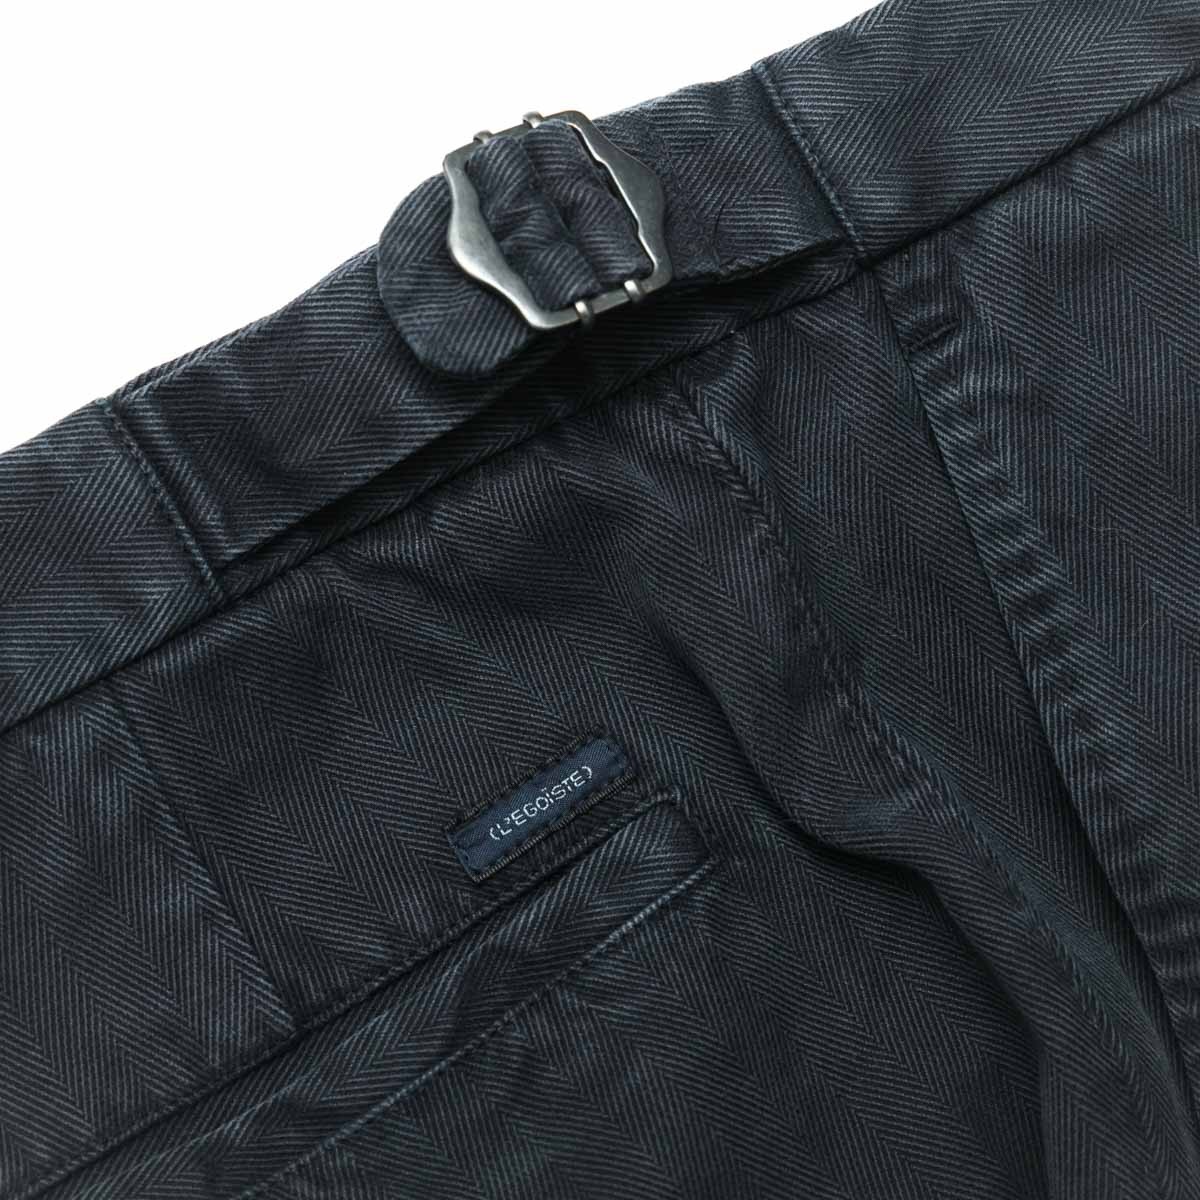 pantalon-a-pinces-en-coton-marine-detail-ceinture